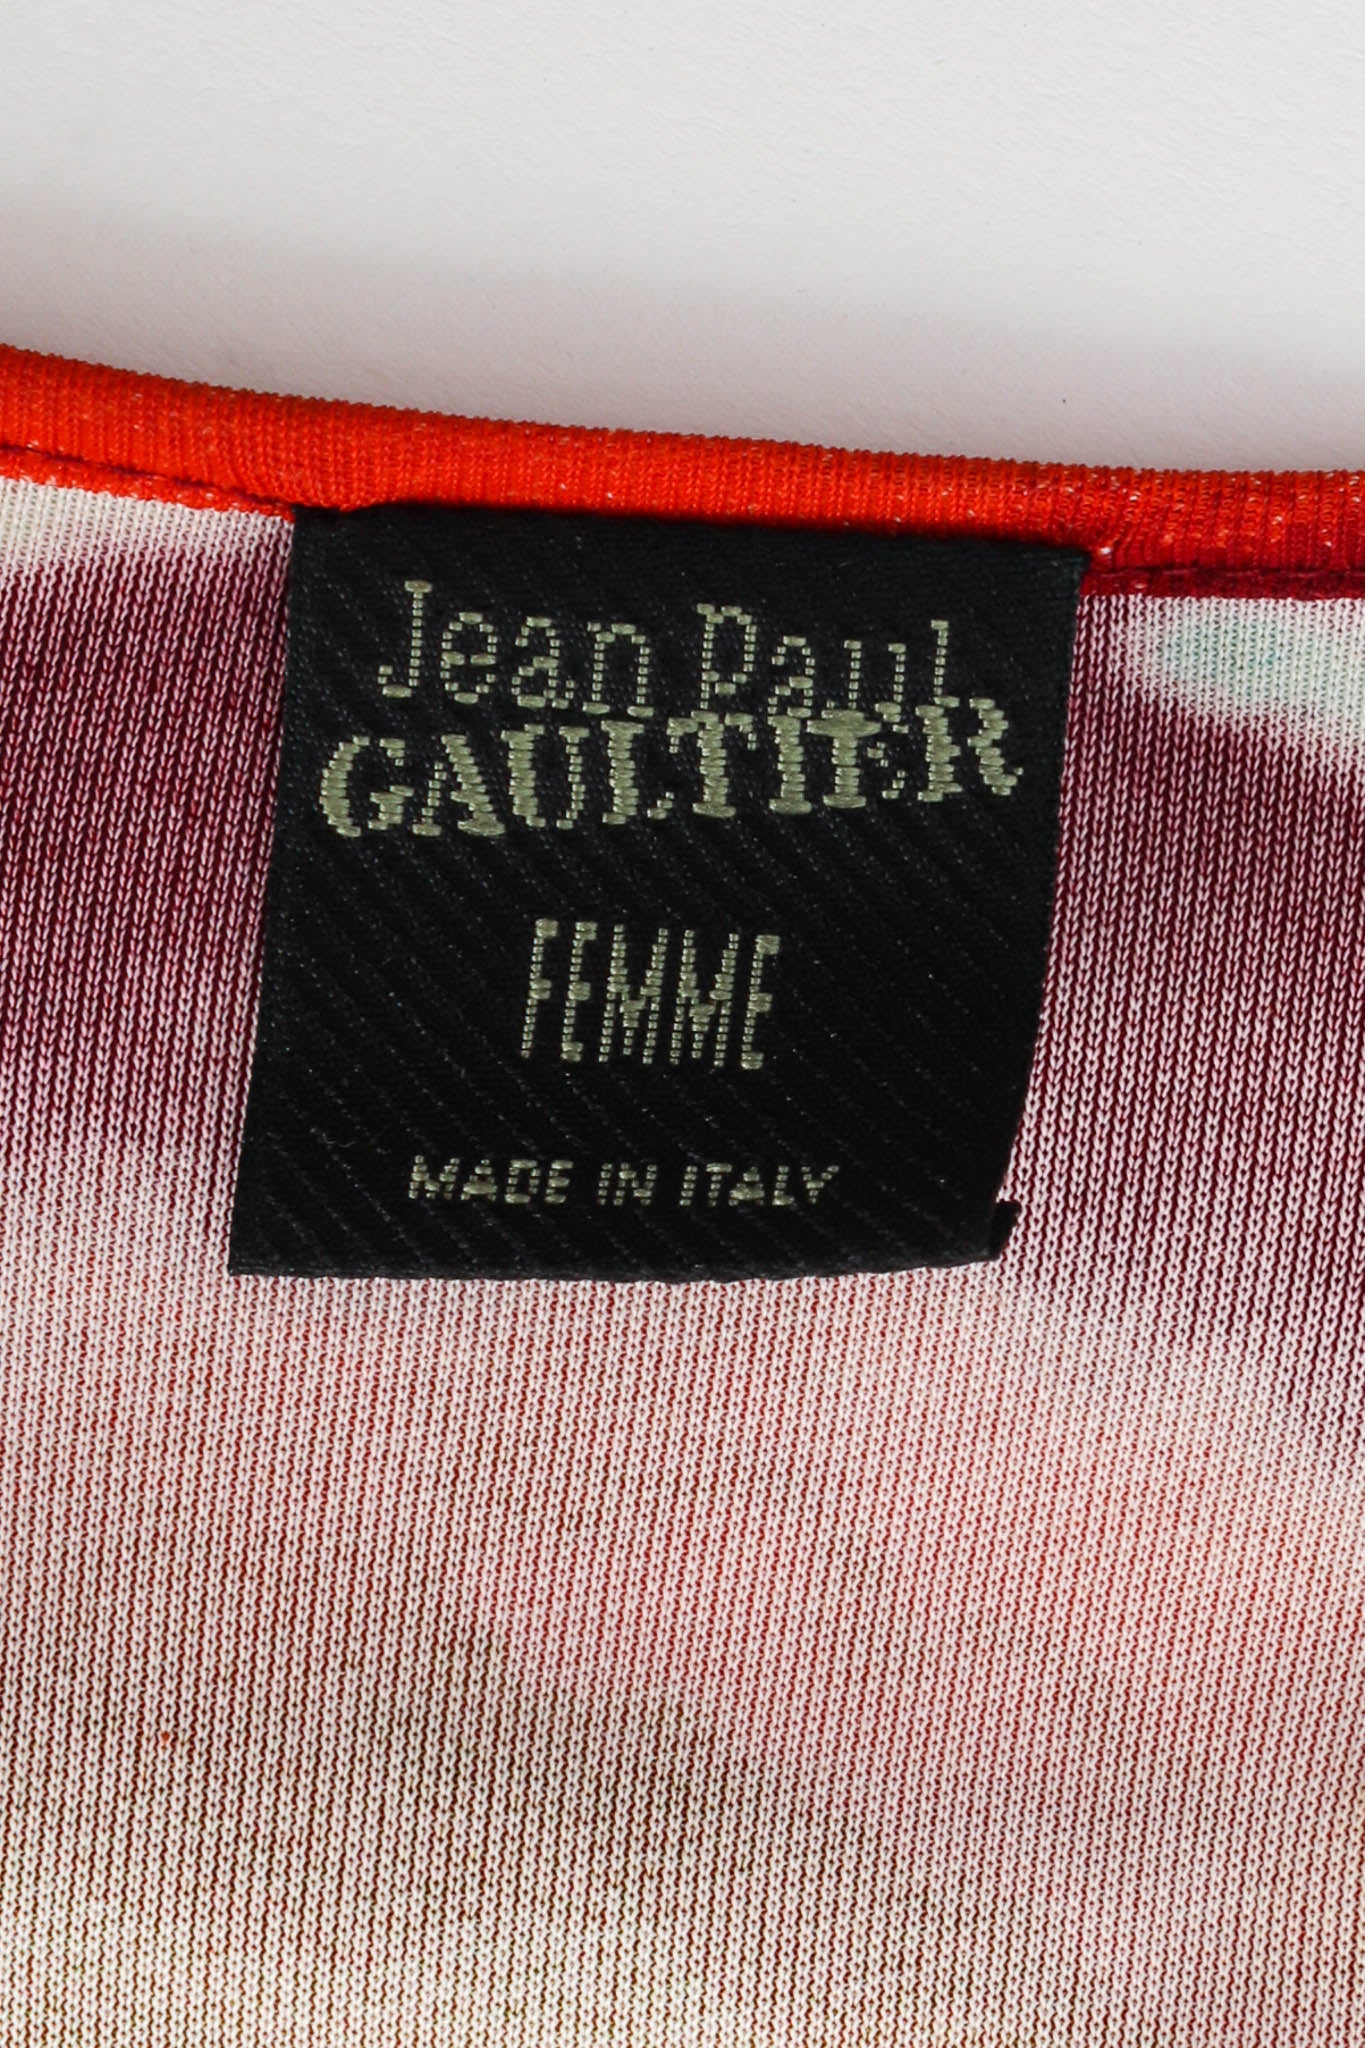 Vintage Jean Paul Gaultier 2000 S/S Acid Top & Pant Set tag @ Recess LA